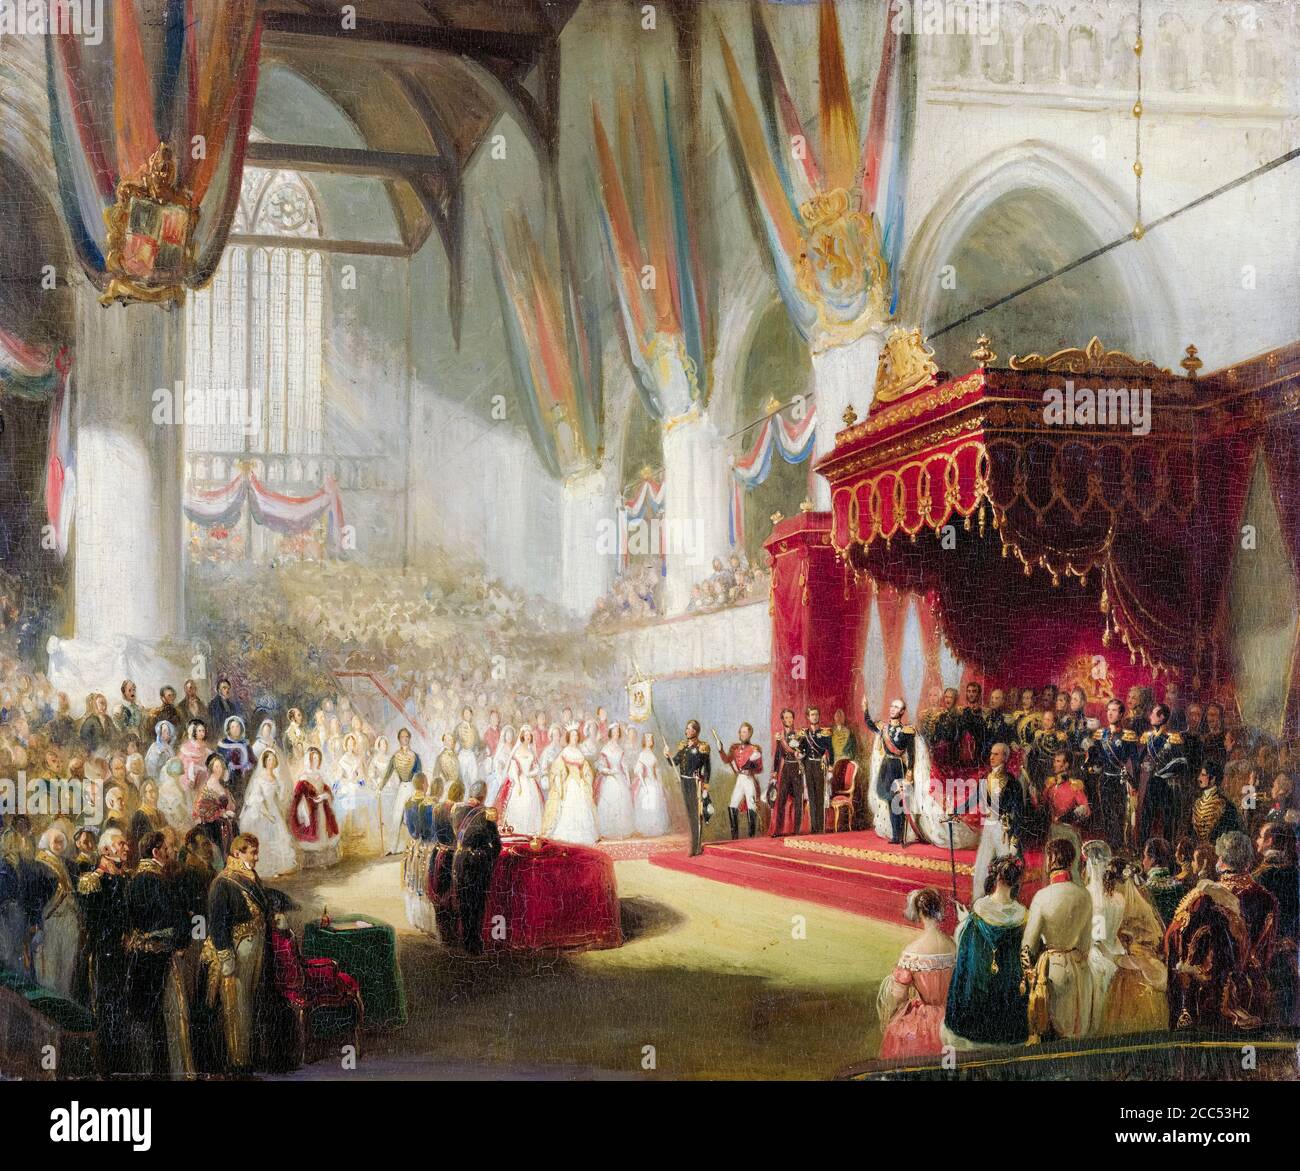 L'Inaugurazione di re Guglielmo II (1792-1849), re dei Paesi Bassi, nel Nieuwe Kerk di Amsterdam il 28 novembre 1840, dipinto di Nicolaas Pieneman, 1840-1845 Foto Stock